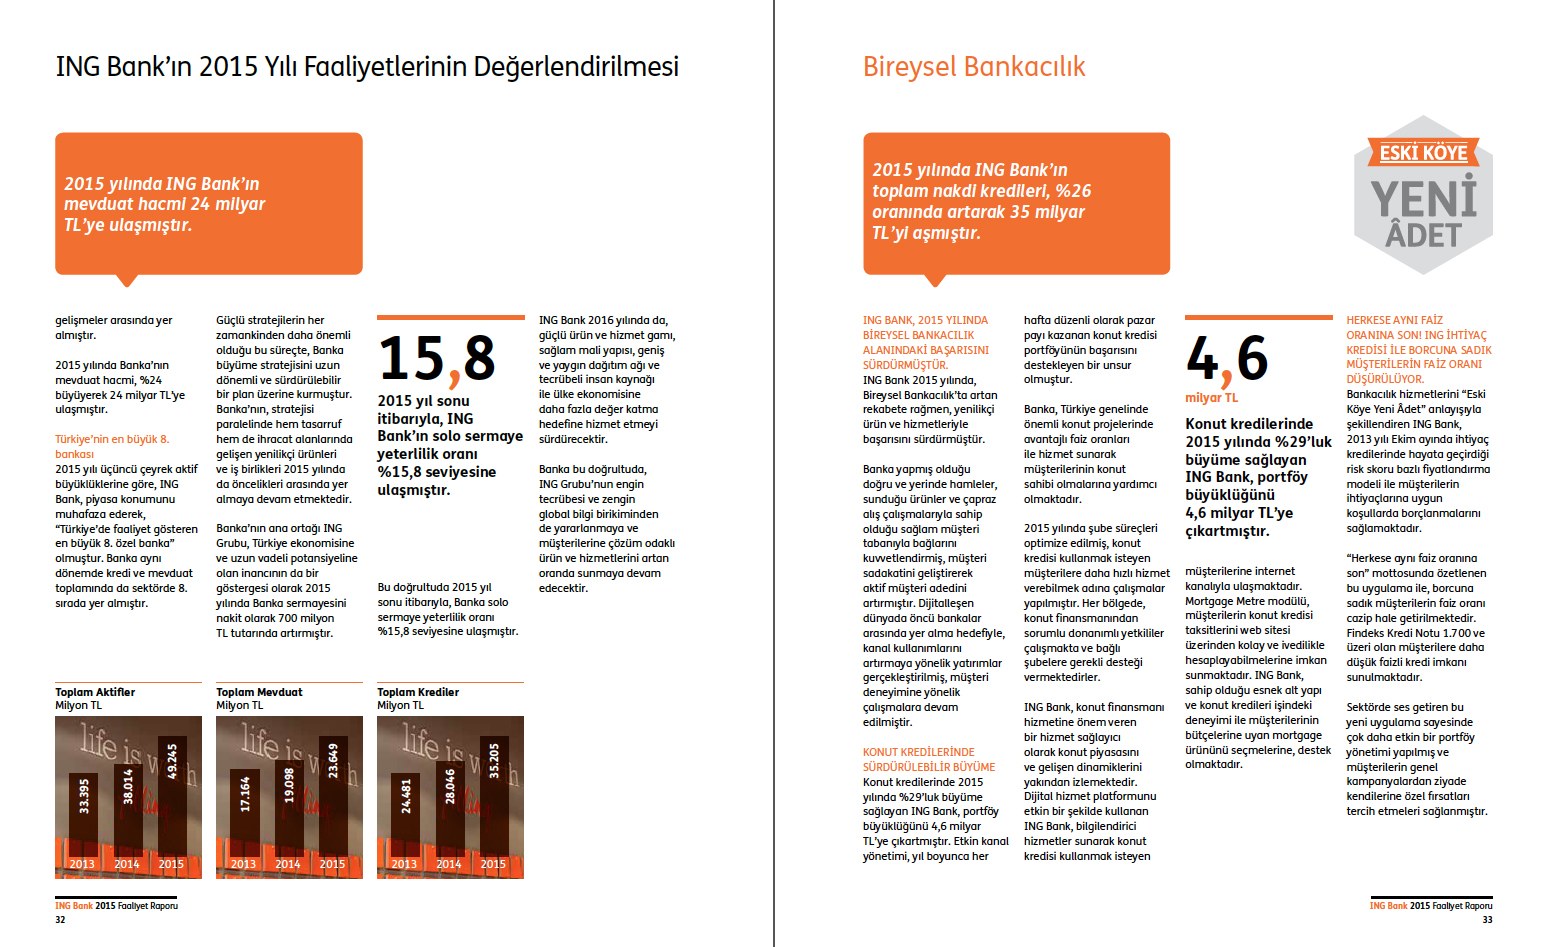 ING BANK / 2015 Faaliyet Raporu / 2015 Annual Report